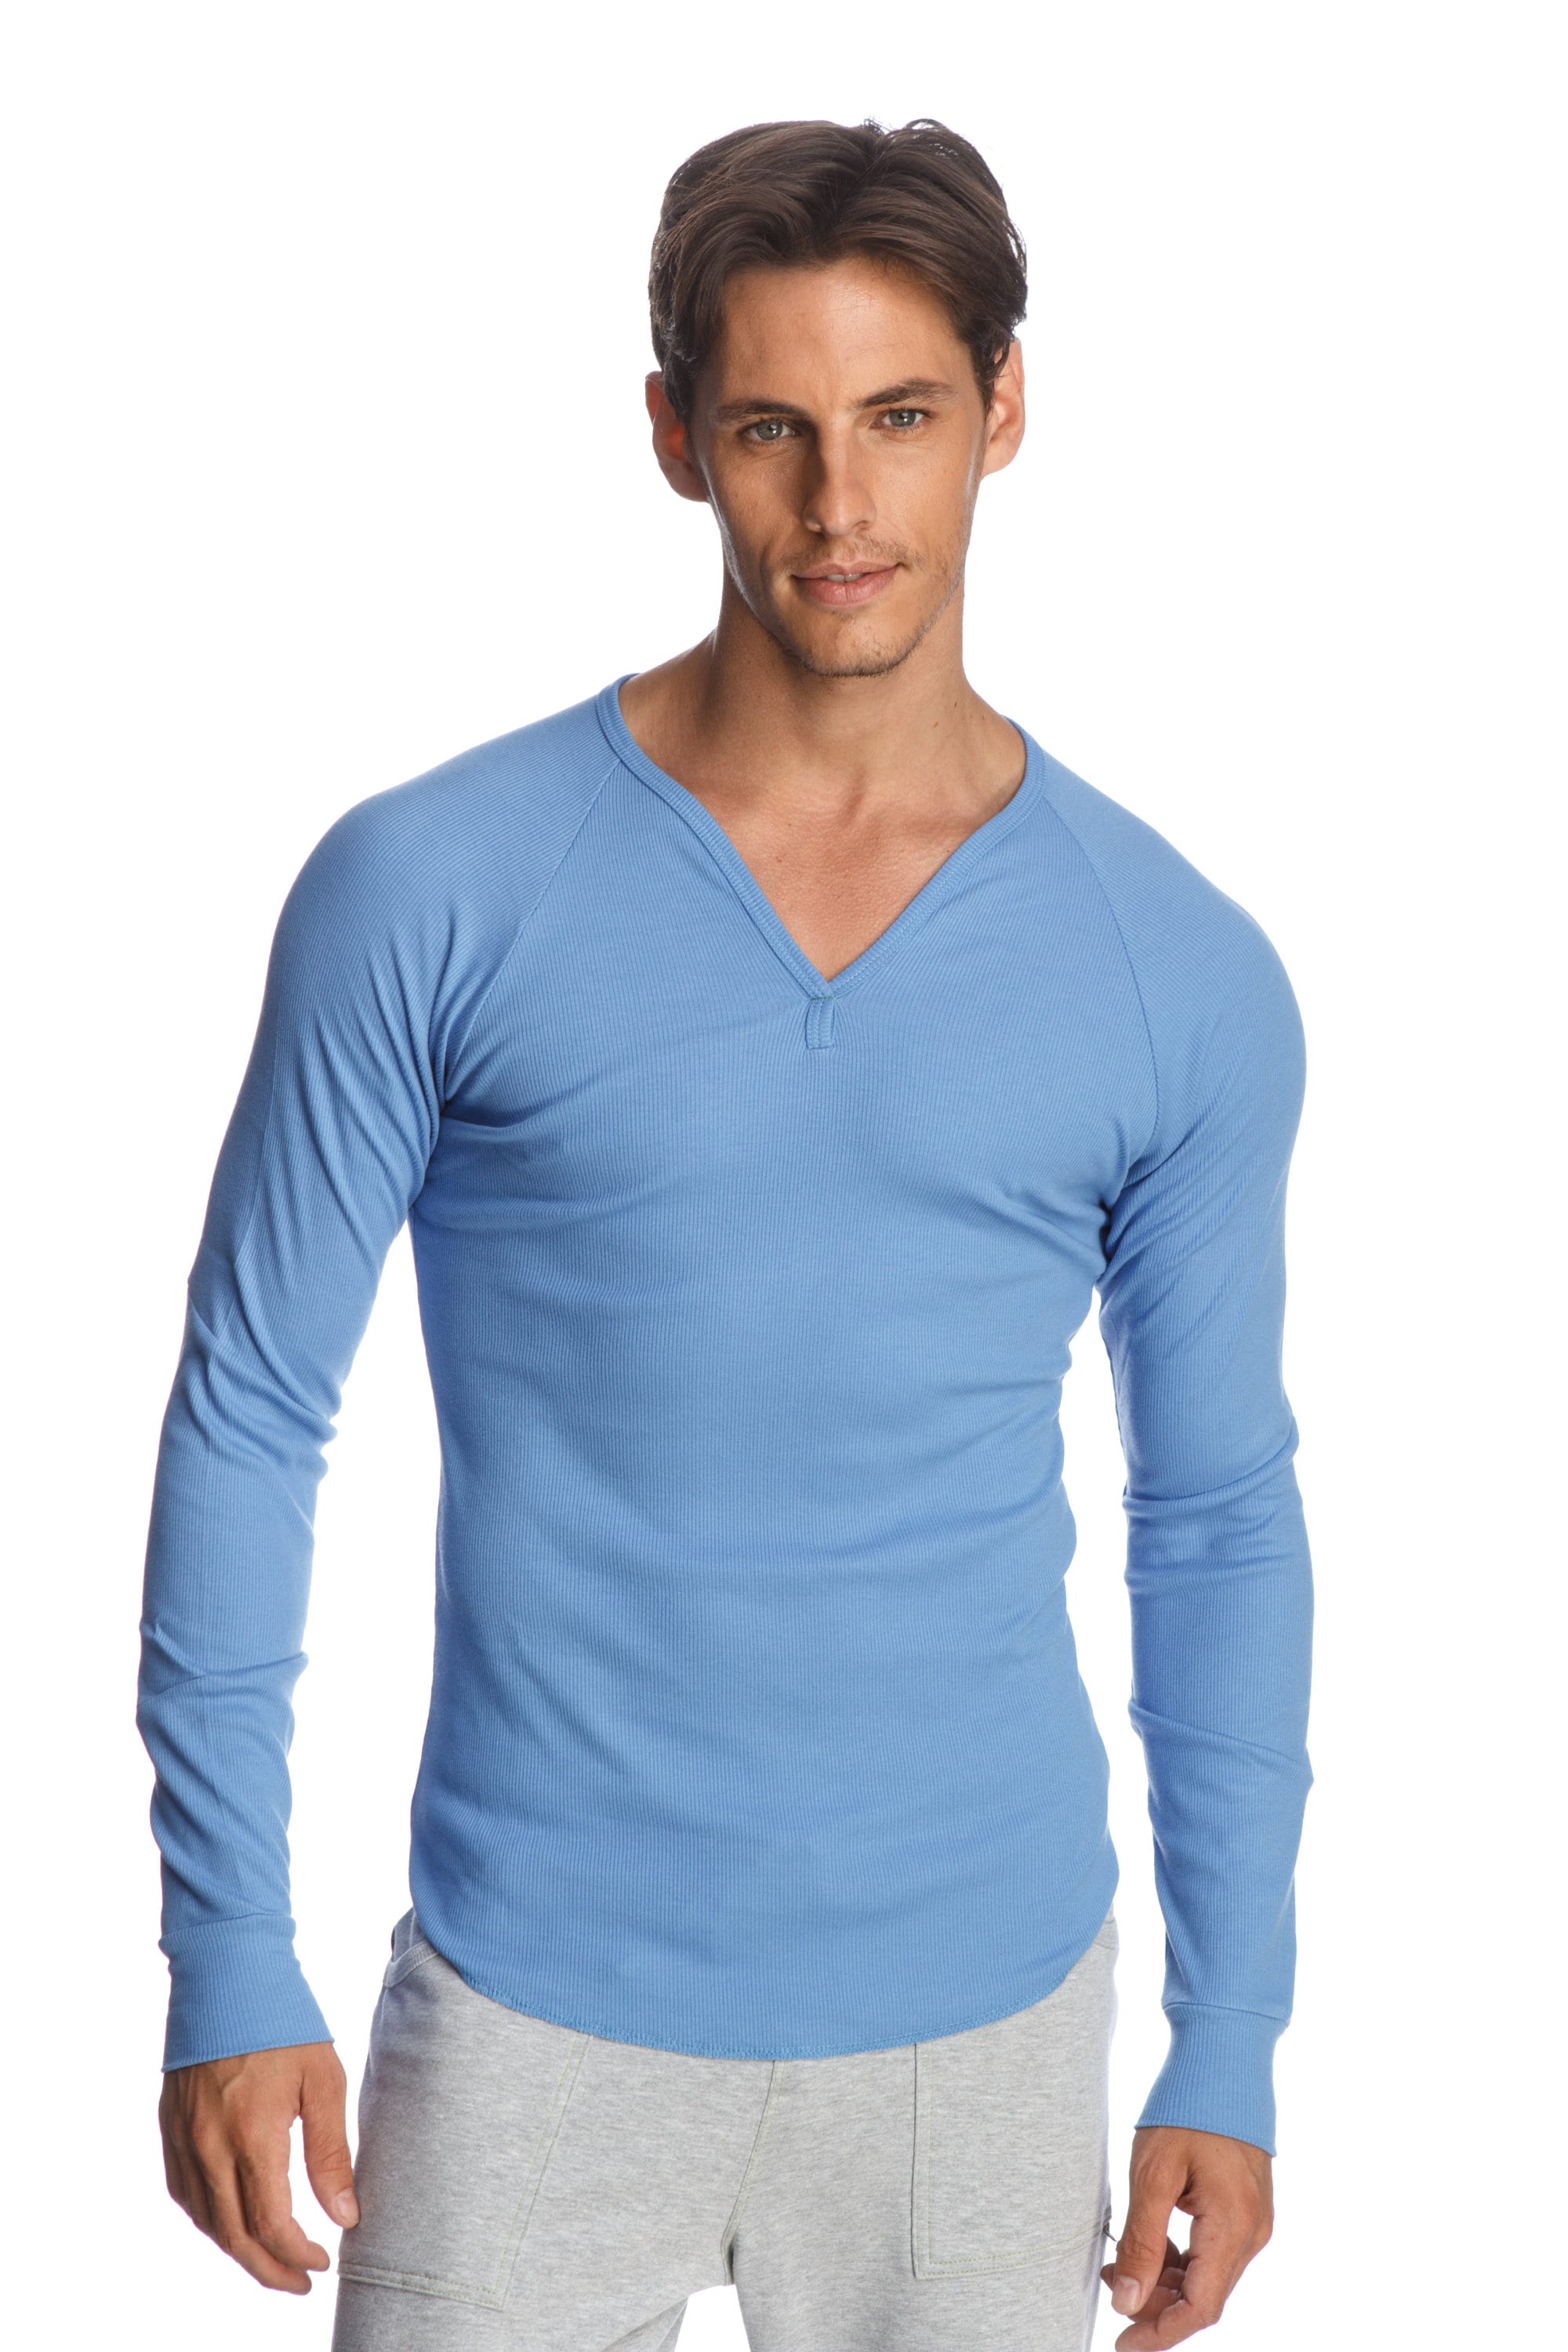 Thermal Undershirt for Men Mock Turtleneck(Marled Blue,S) at